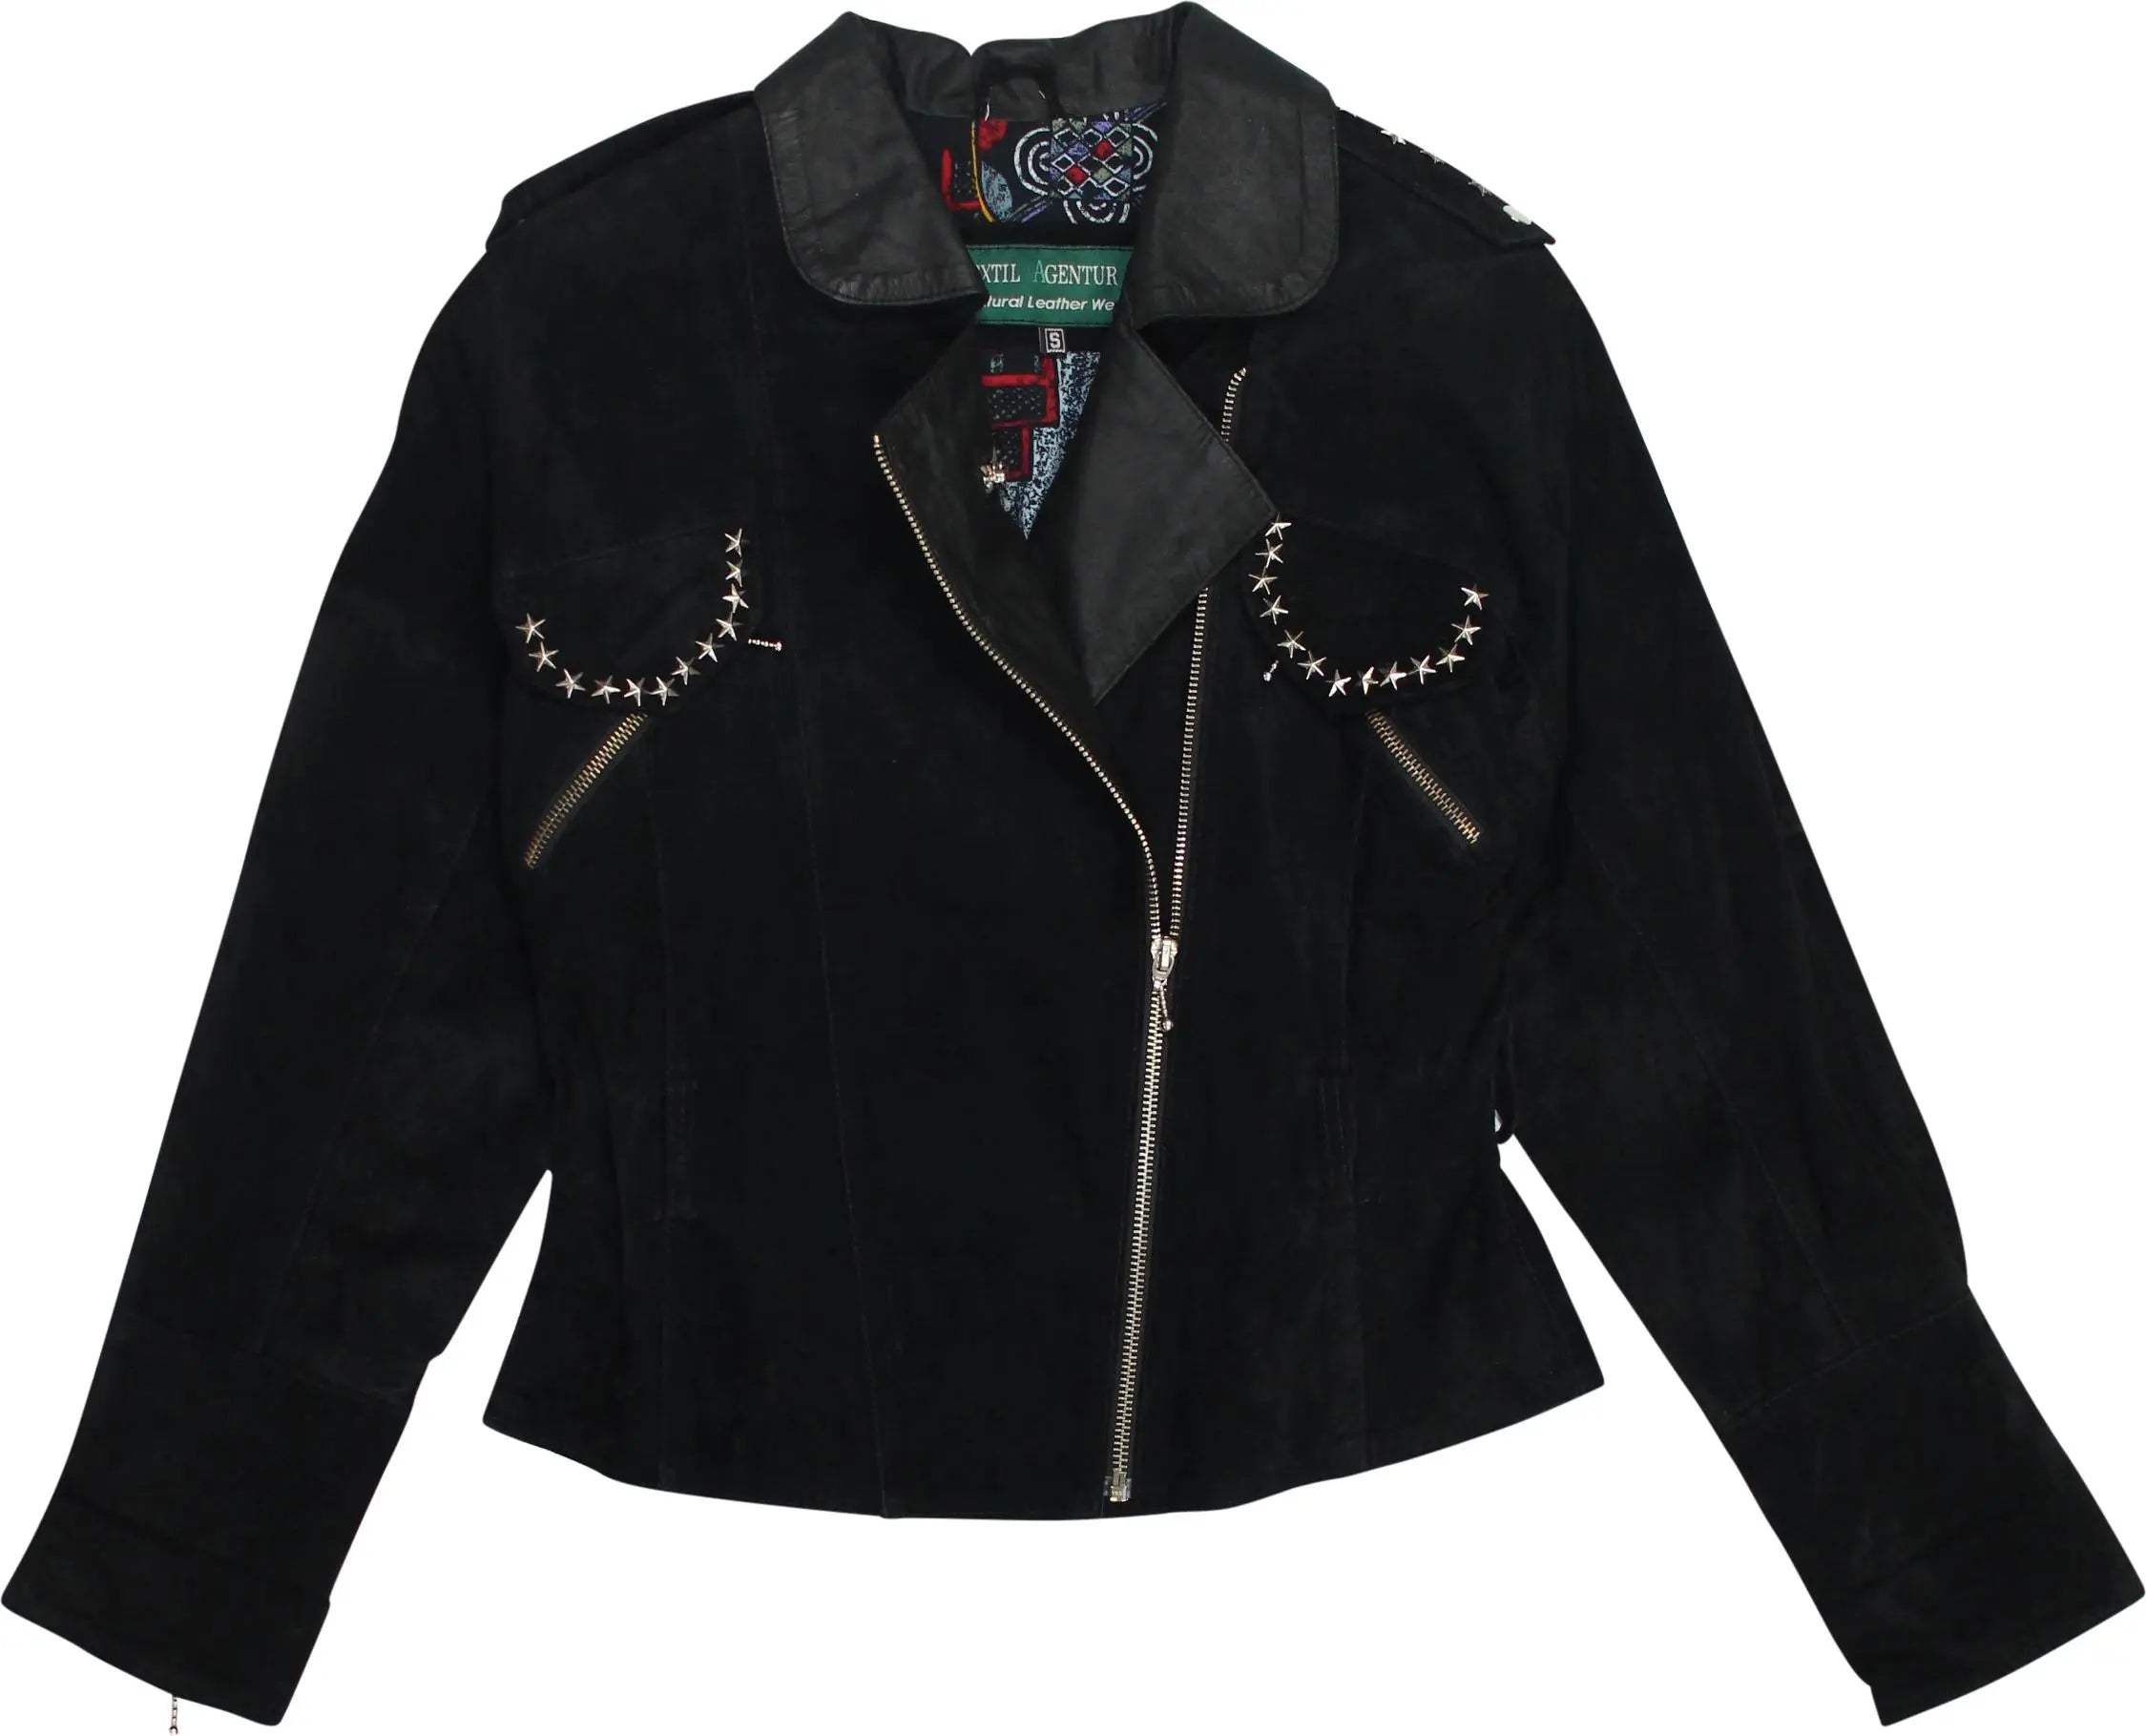 Textil Agentur - Black Studded Suede Jacket- ThriftTale.com - Vintage and second handclothing